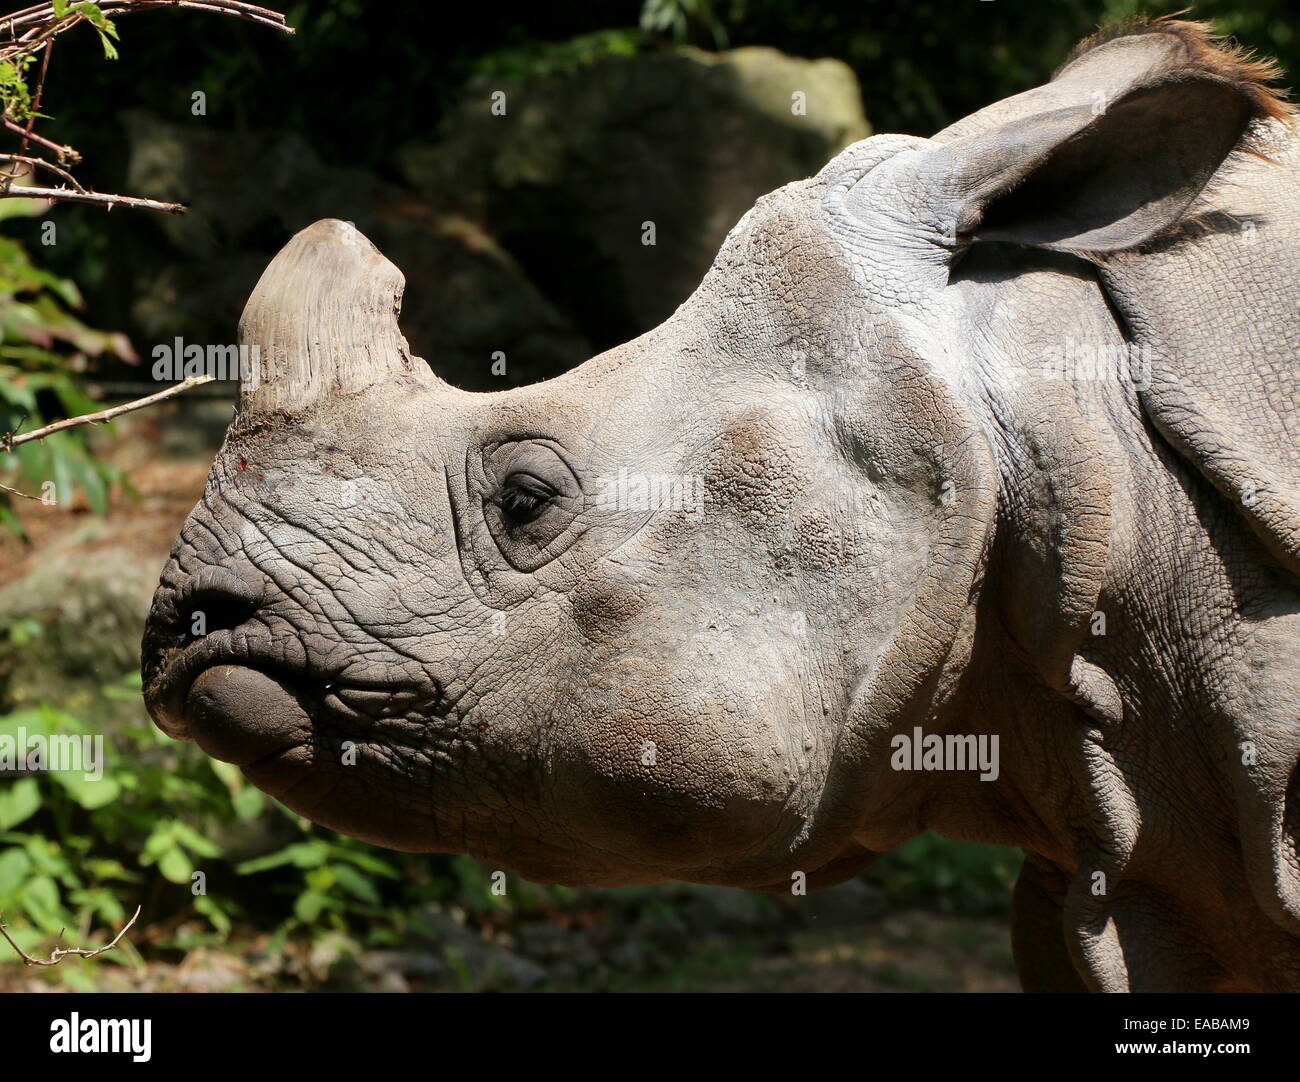 Les Indiens à une corne ( rhinocéros Rhinoceros unicornis) de profil, gros plan de la tête Banque D'Images